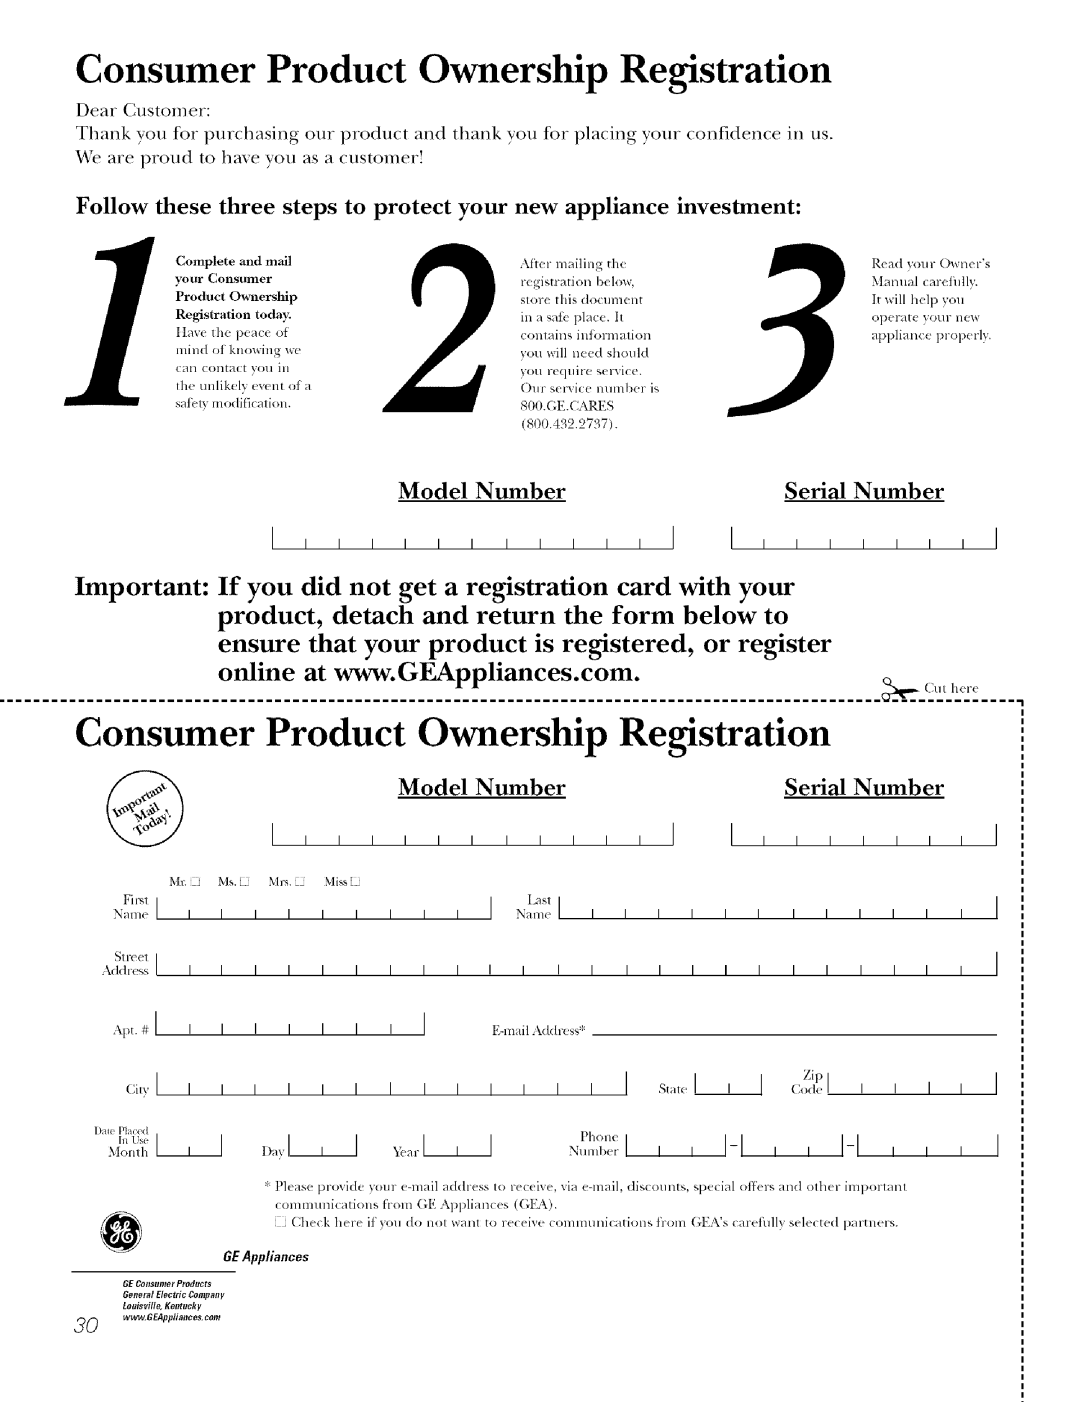 GE J7912-30 manual Consumer Product Ownership Registration, Ap .#l, E-lnailAddress 